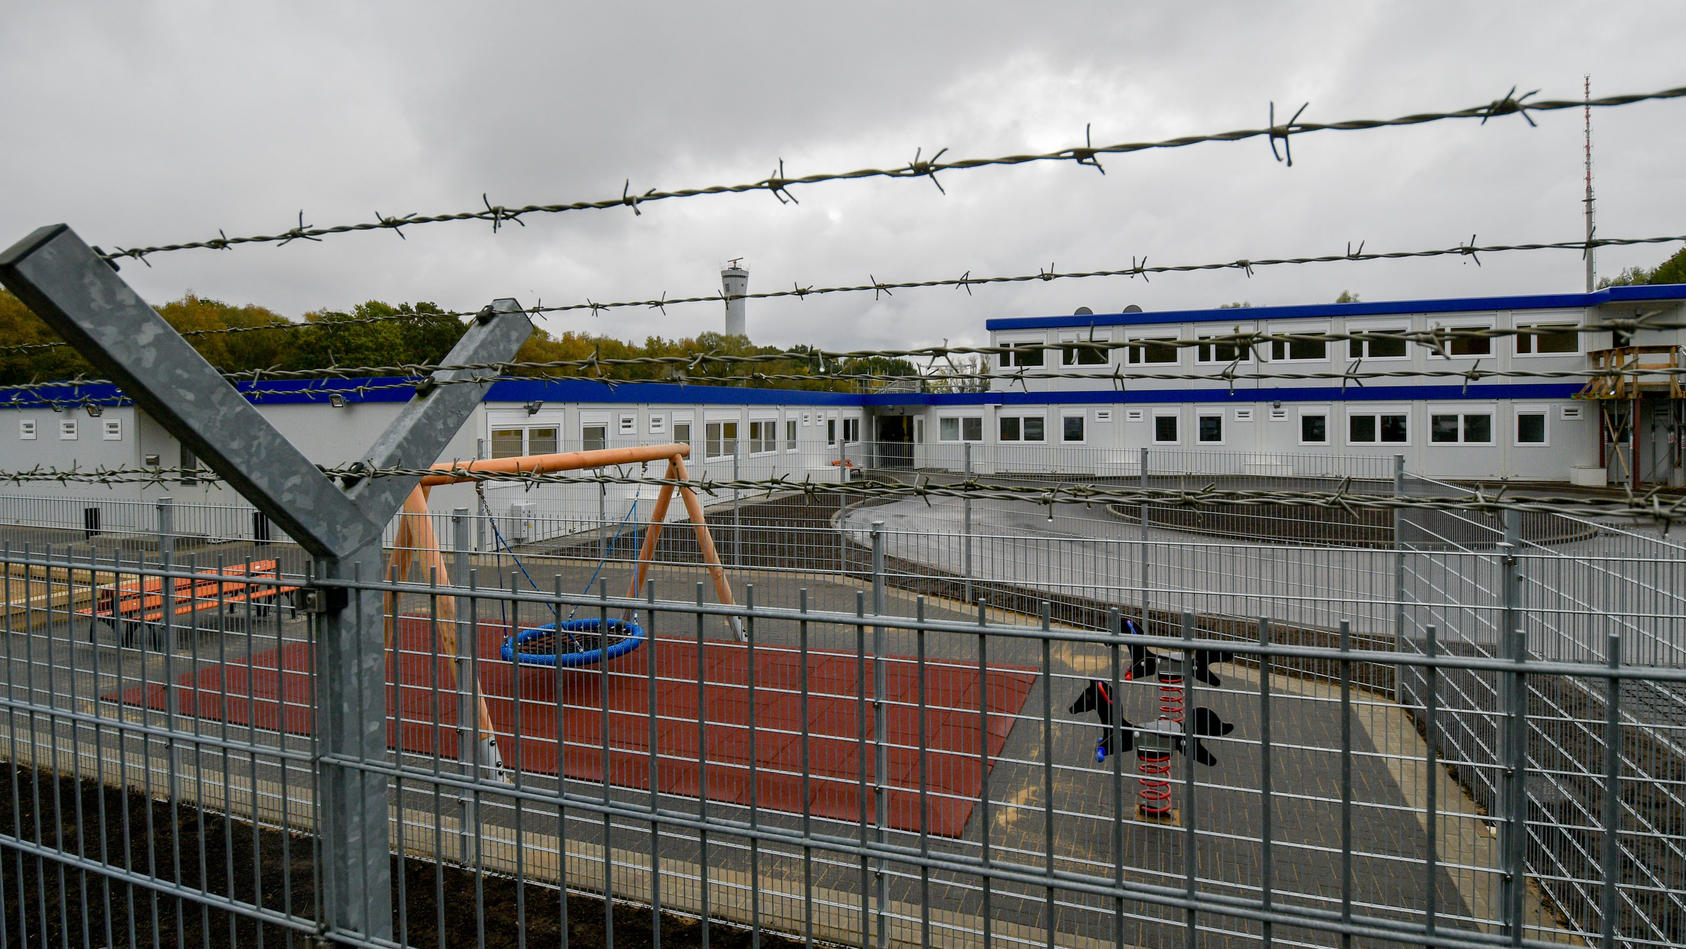 ARCHIV - Stacheldraht umgibt am 21.10.2016 in Hamburg die Container des neuen Ausreisegewahrsams am Flughafen. Aus der Abschiebe-Unterkunft am Airport sind zwei Menschen geflohen und aufs Rollfeld gelaufen. Die Abschiebe-Einrichtung wurde am Hamburge